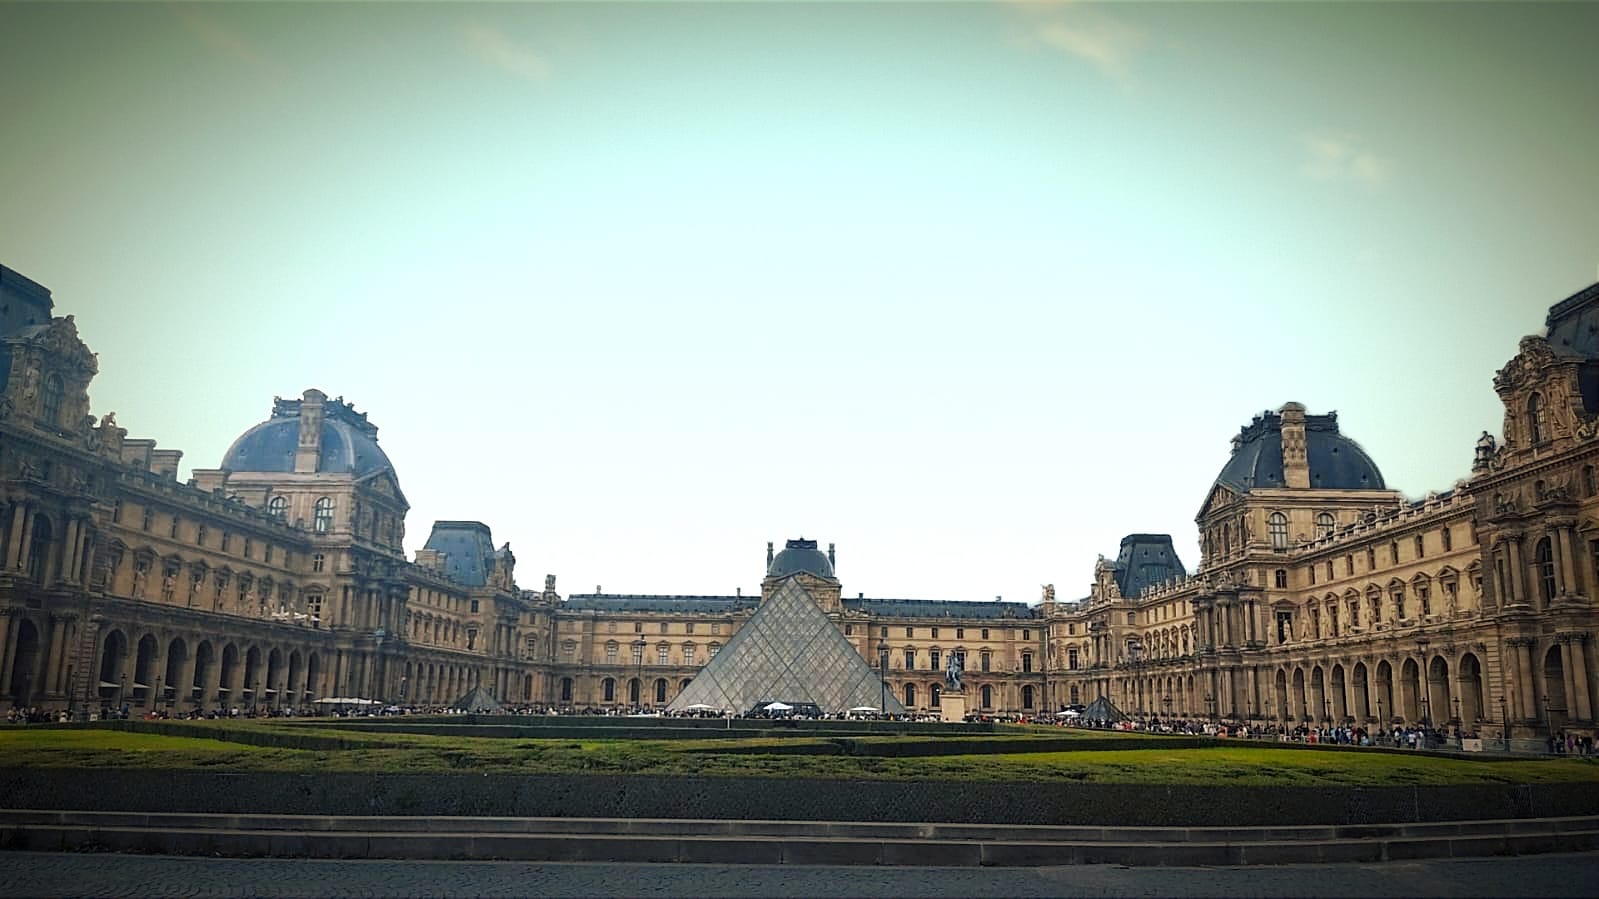 Cosa vedere a Parigi - Louvre (foto D. Cuomo - NonSoloRisparmio)